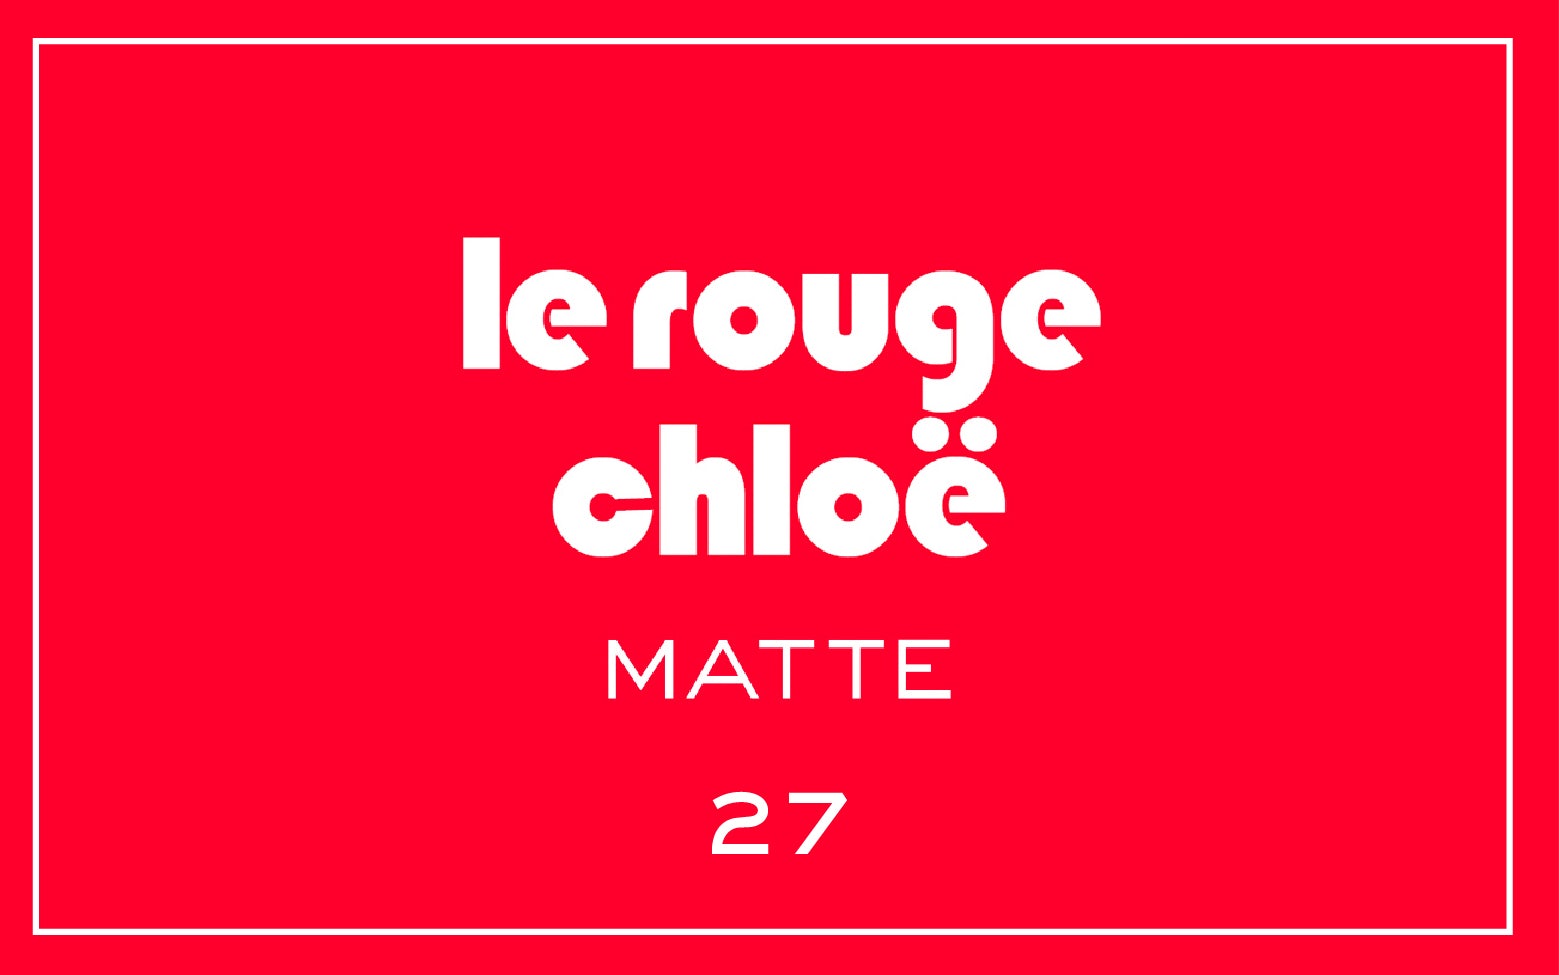 La bouche rouge Le Rouge Chloë lipstick swatch with text